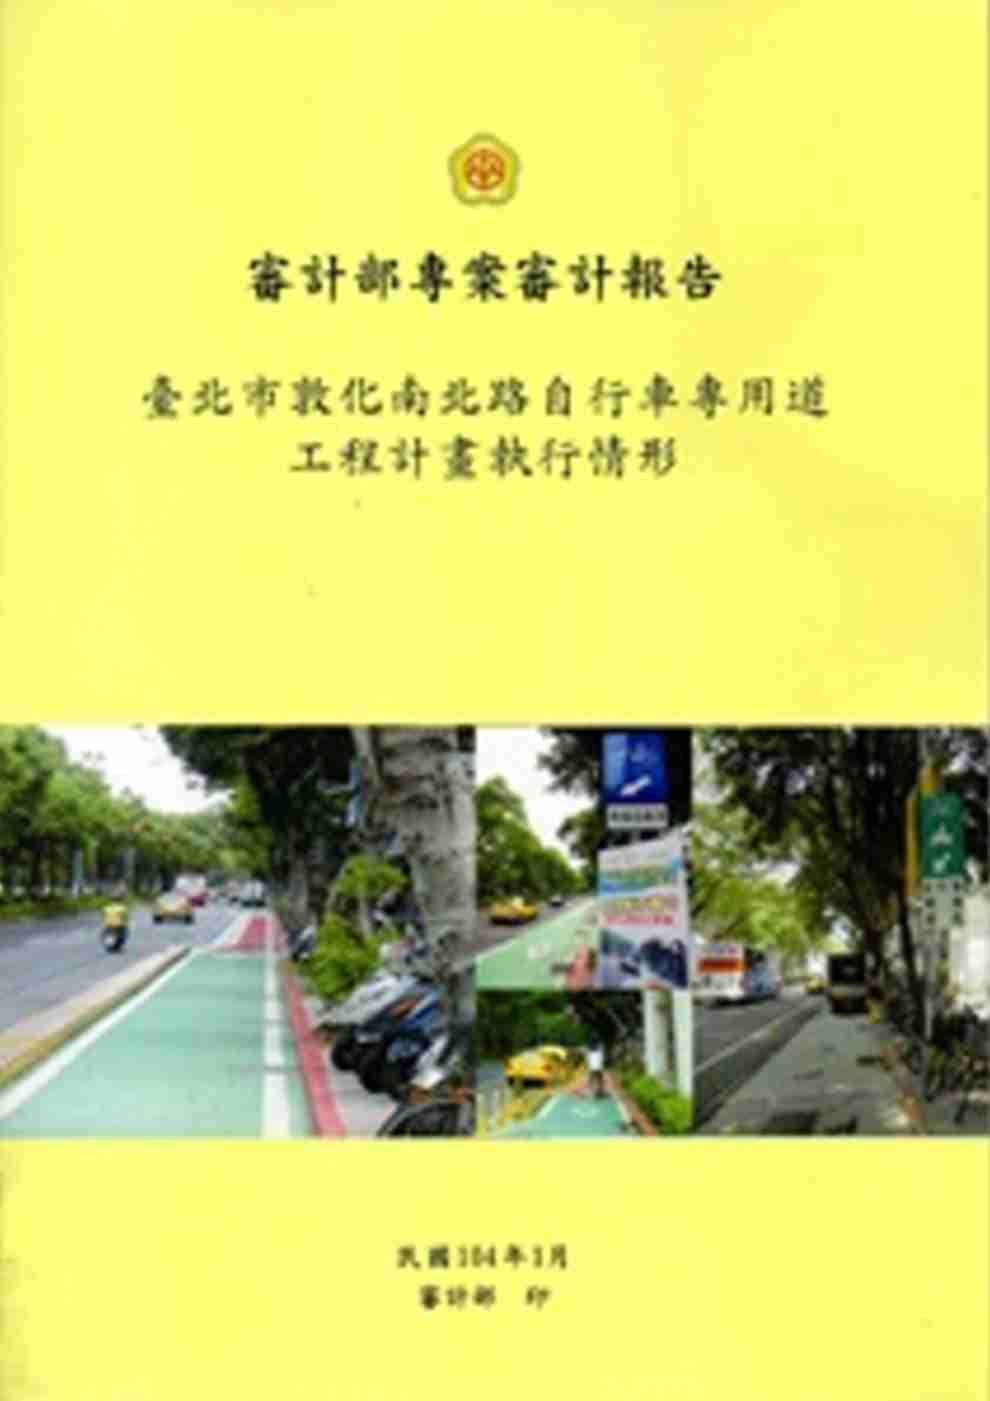 臺北市敦化南北路自行車專用道工程計畫執行情形